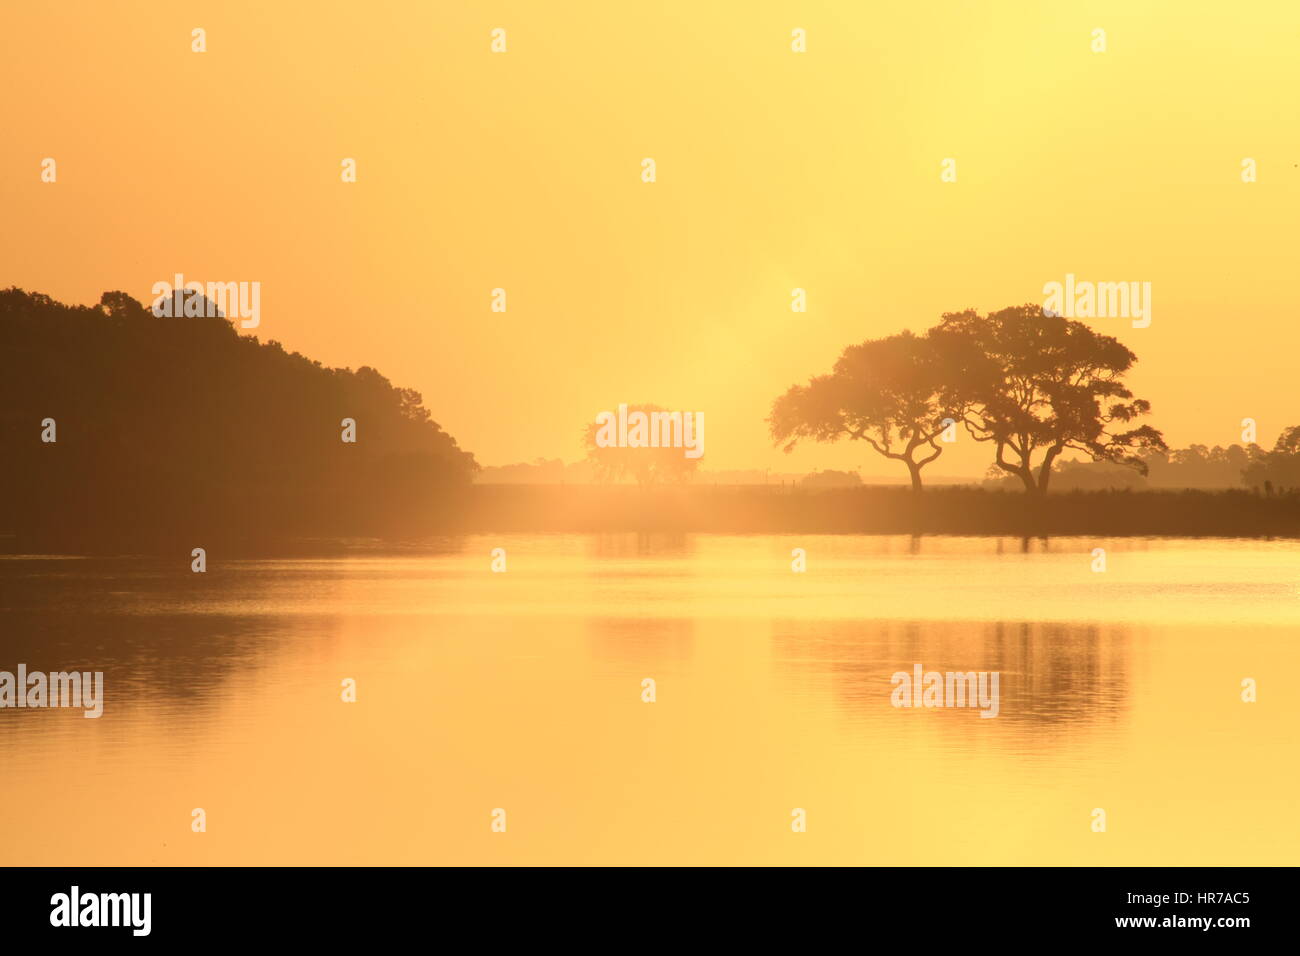 Lever de soleil sur un étang à Kiawah Island, Caroline du Sud. Le ciel est d'or et il y a un joli reflet de chênes vivent dans l'eau. Banque D'Images